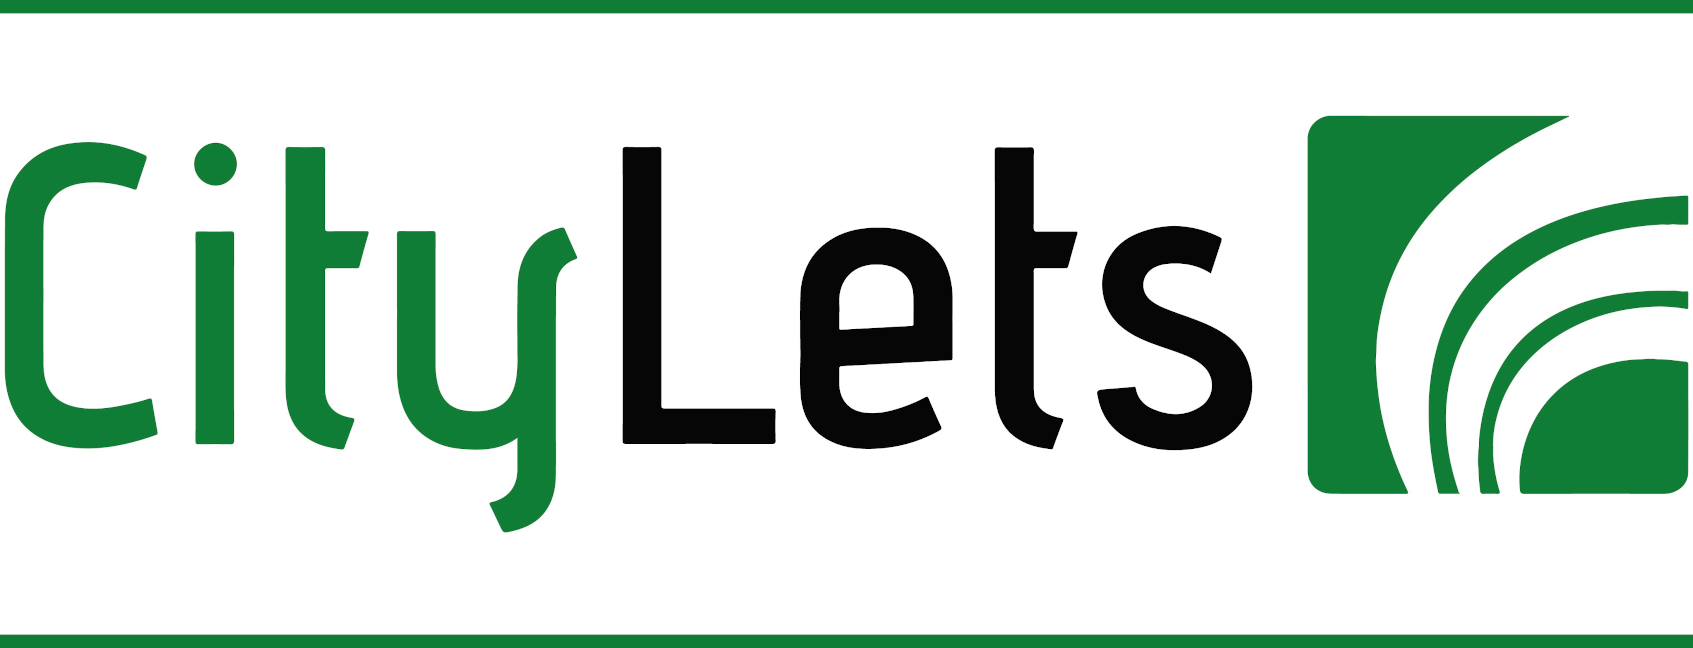 citylets logo